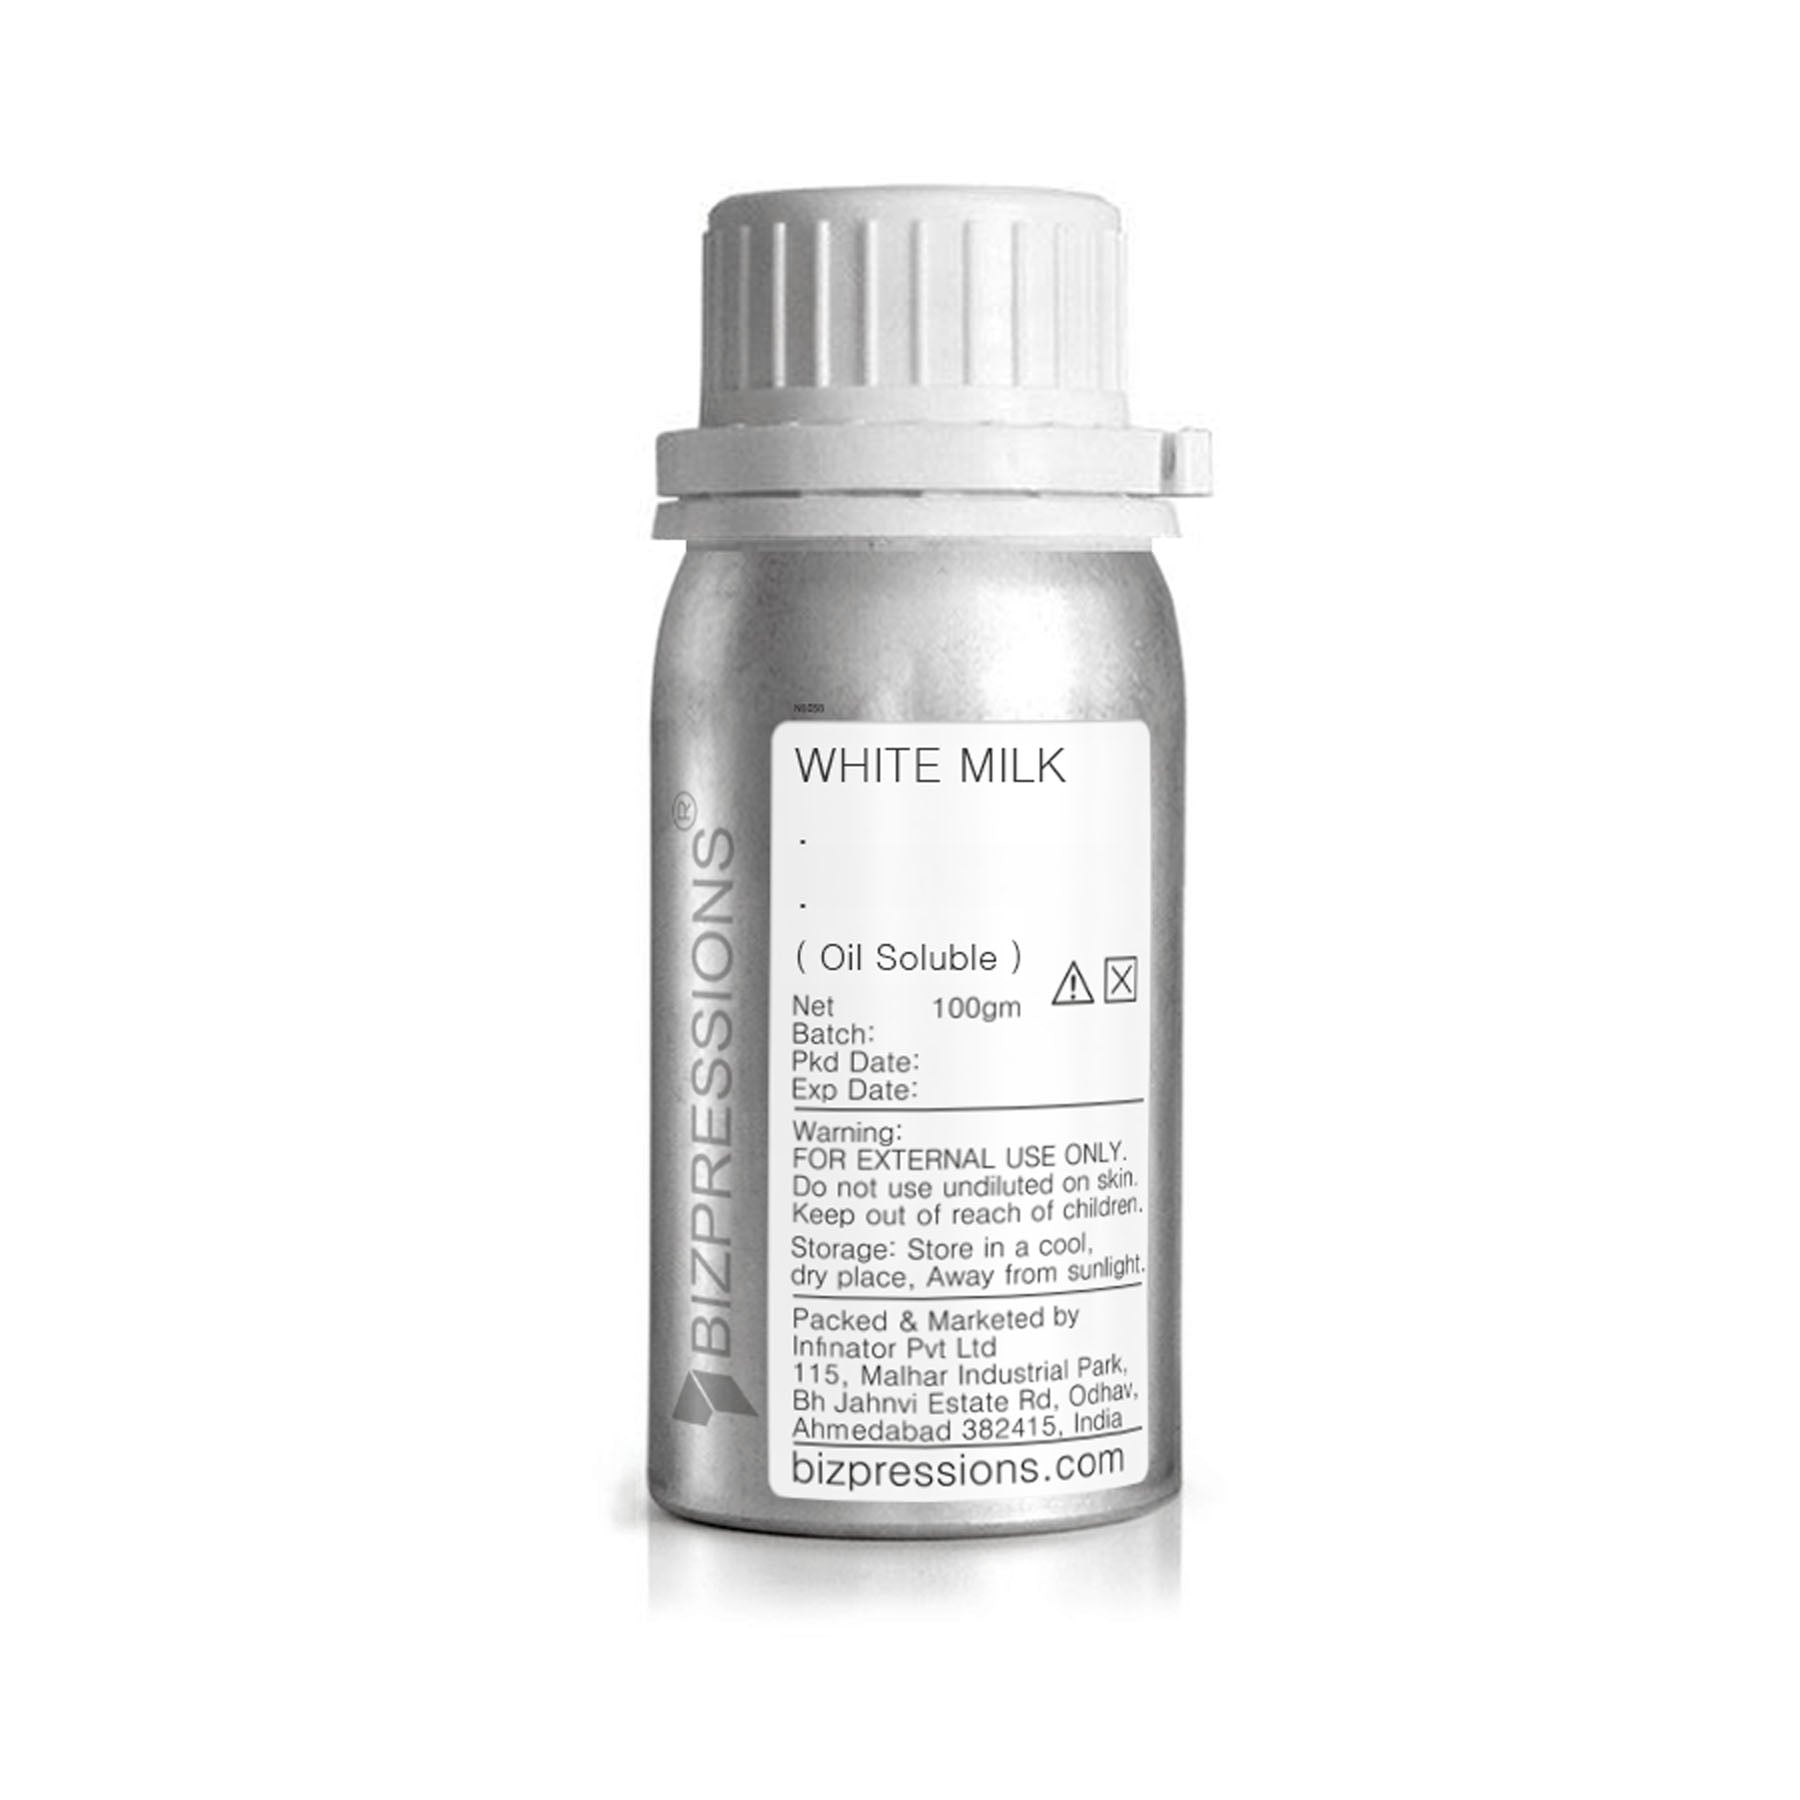 WHITE MILK - Fragrance ( Oil Soluble ) - 100 gm